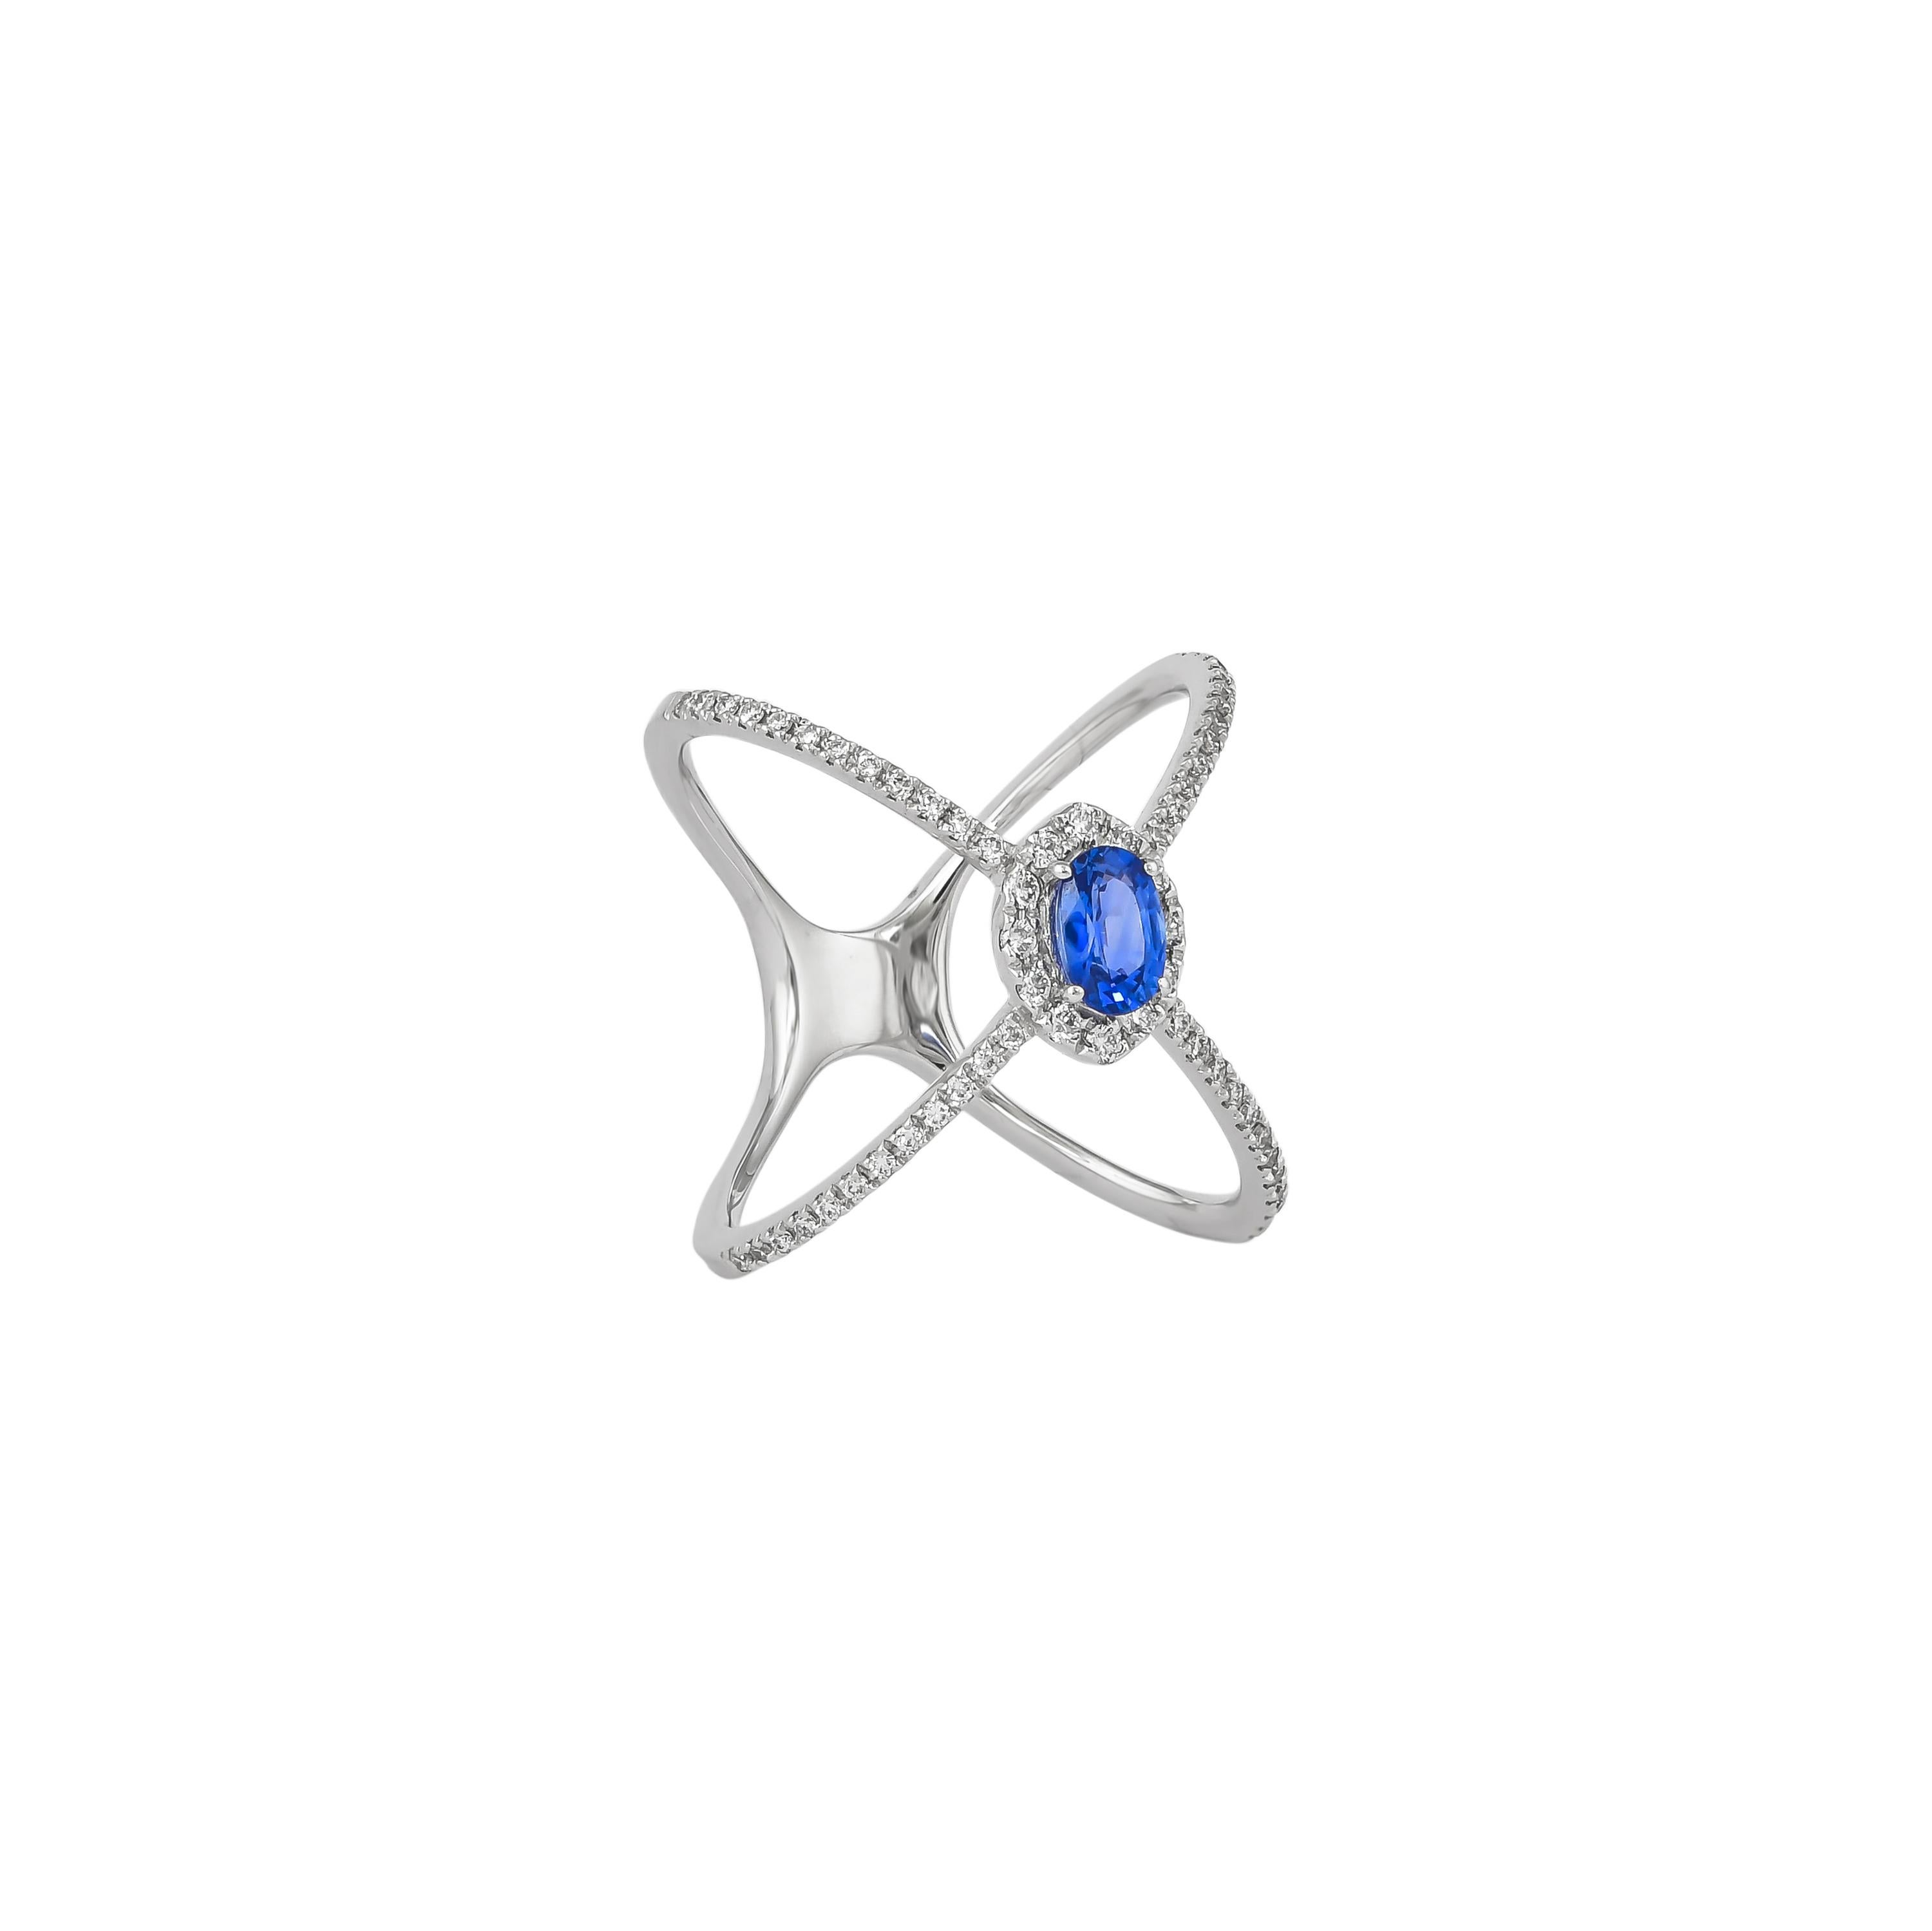 Einzigartige und Designer-Cocktailringe von Sunita Nahata Fine Design.

Klassischer Ring mit blauem Saphir aus 18 Karat Weißgold und Diamant. 

Blauer Saphir: 0,59 Karat, 6X4mm Größe, ovale Form. 
Diamant: 0,116 Karat, 1,30 mm groß, runde Form,